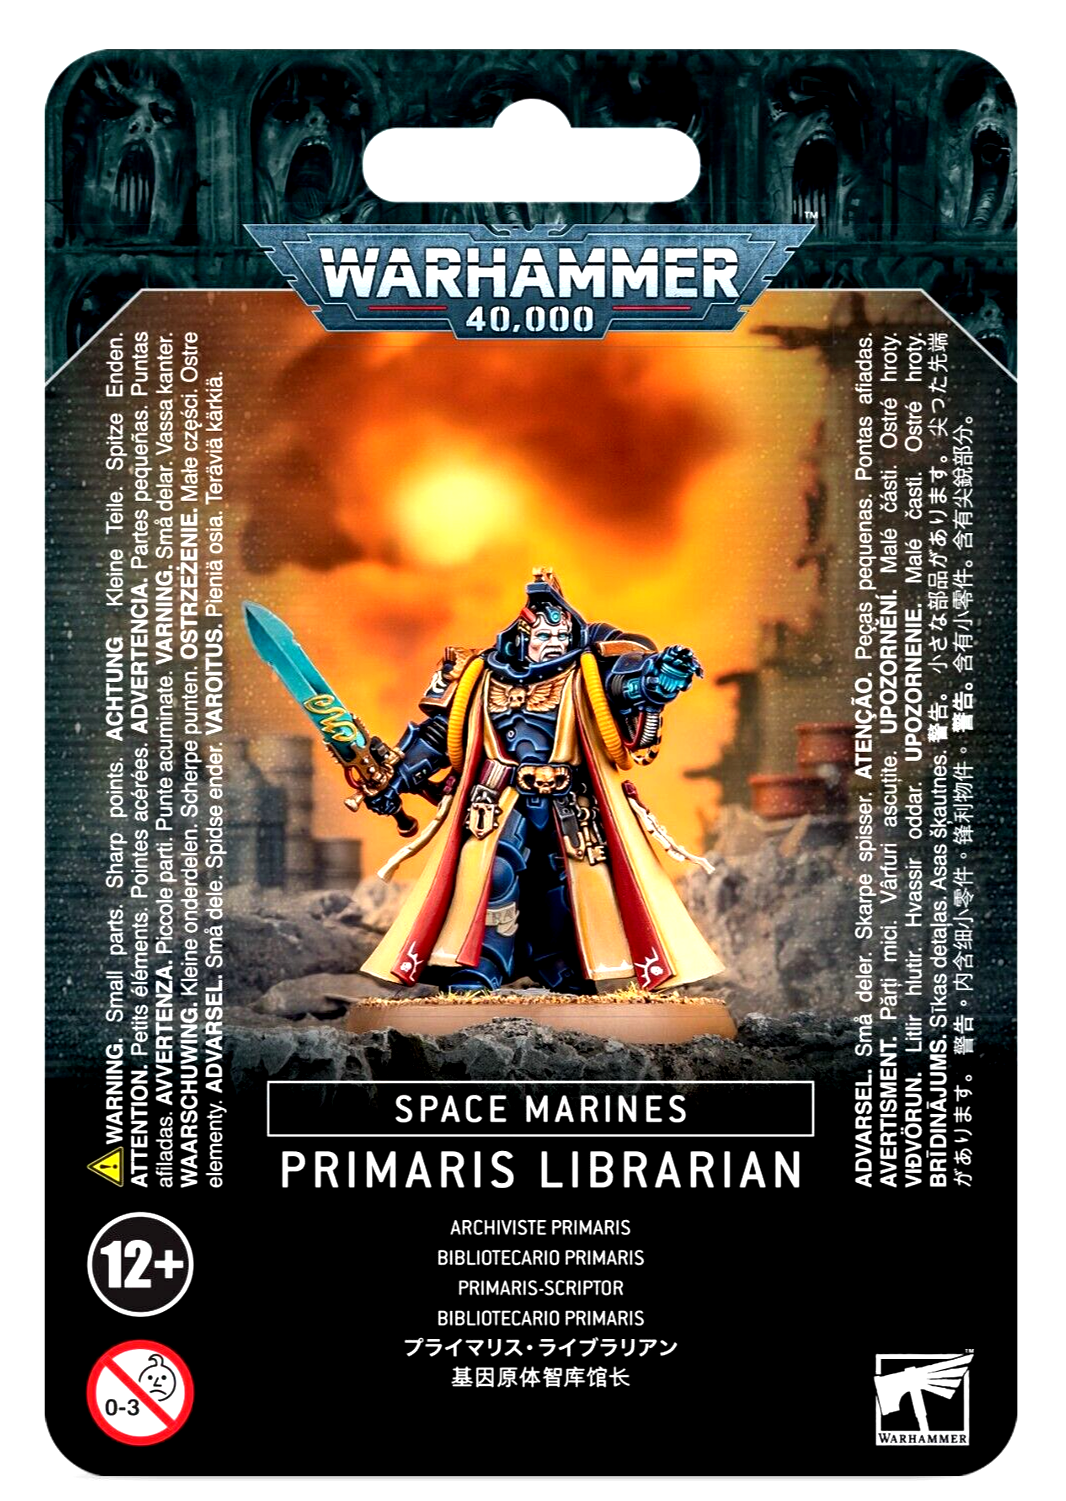 Primaris Librarian Space Marines Warhammer 40K NIB!                      WBGames